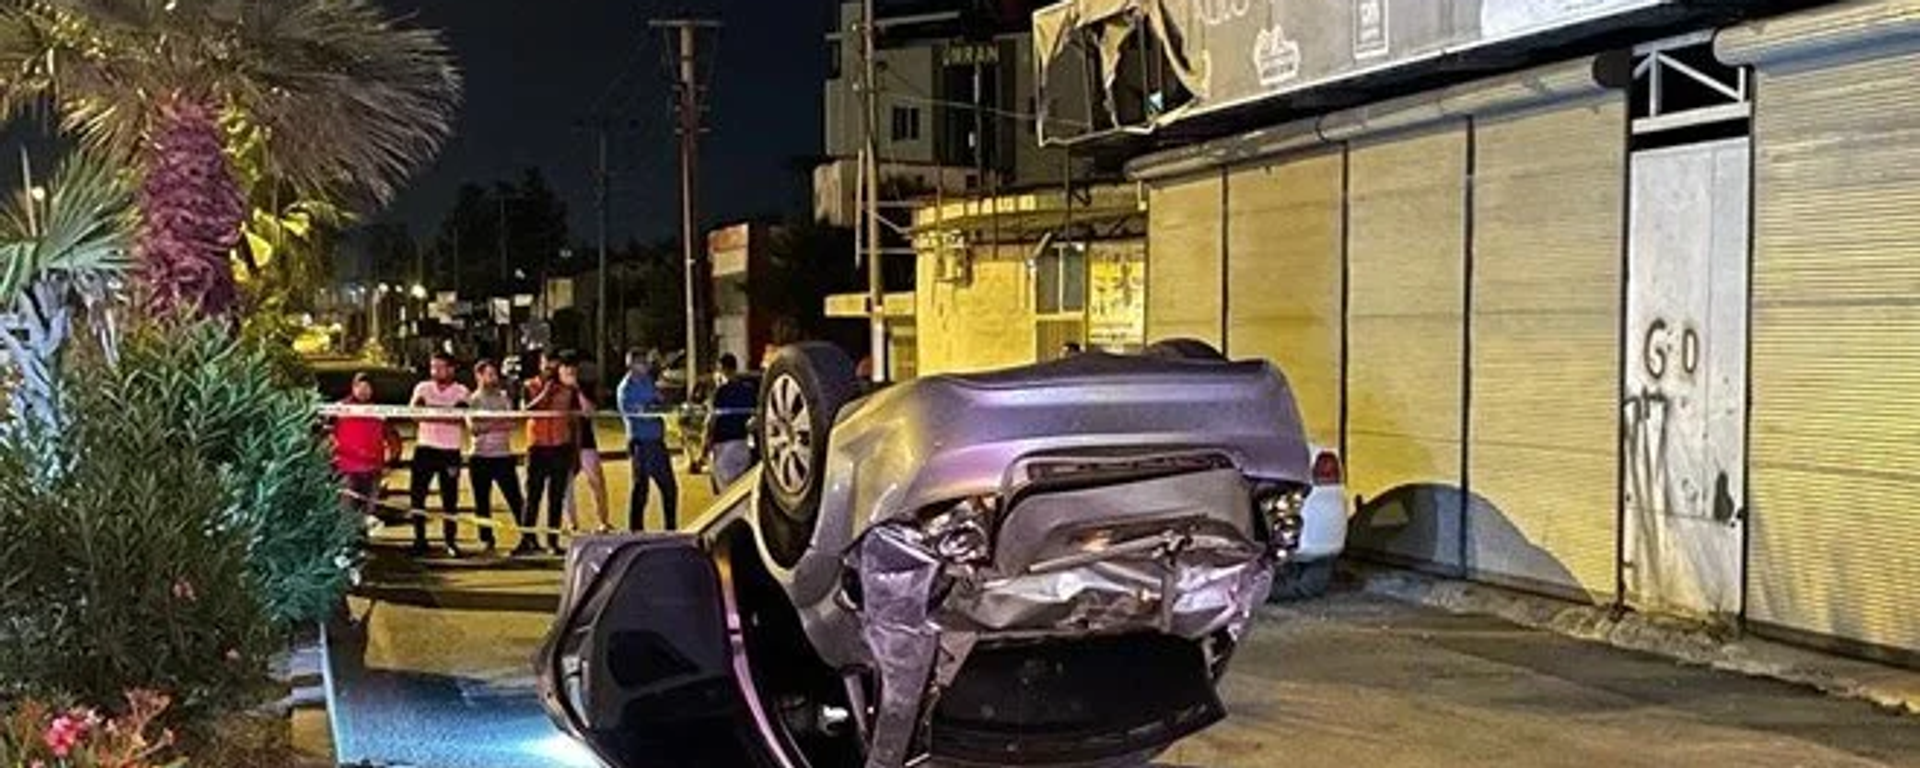 Antalya'da otomobil ile motosikletin çarpıştığı kazada 1 kişi hayatını kaybetti, 2 kişi yaralandı. - Sputnik Türkiye, 1920, 17.06.2022